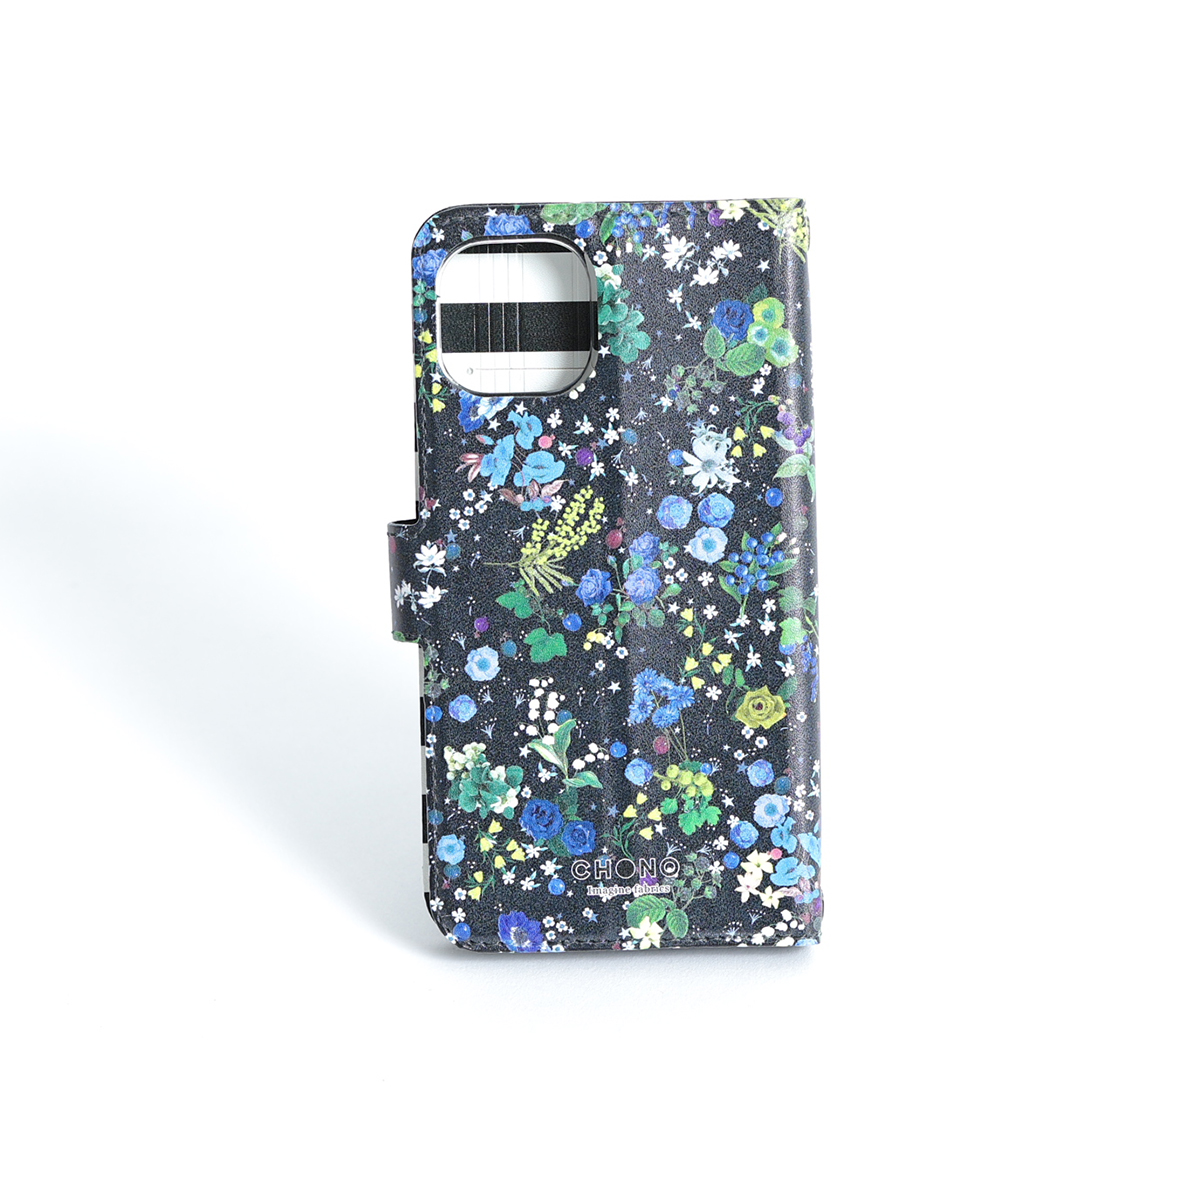 11月下旬お届け予定ご受注商品『Actress flower BLUE』 Android notebook type case画像